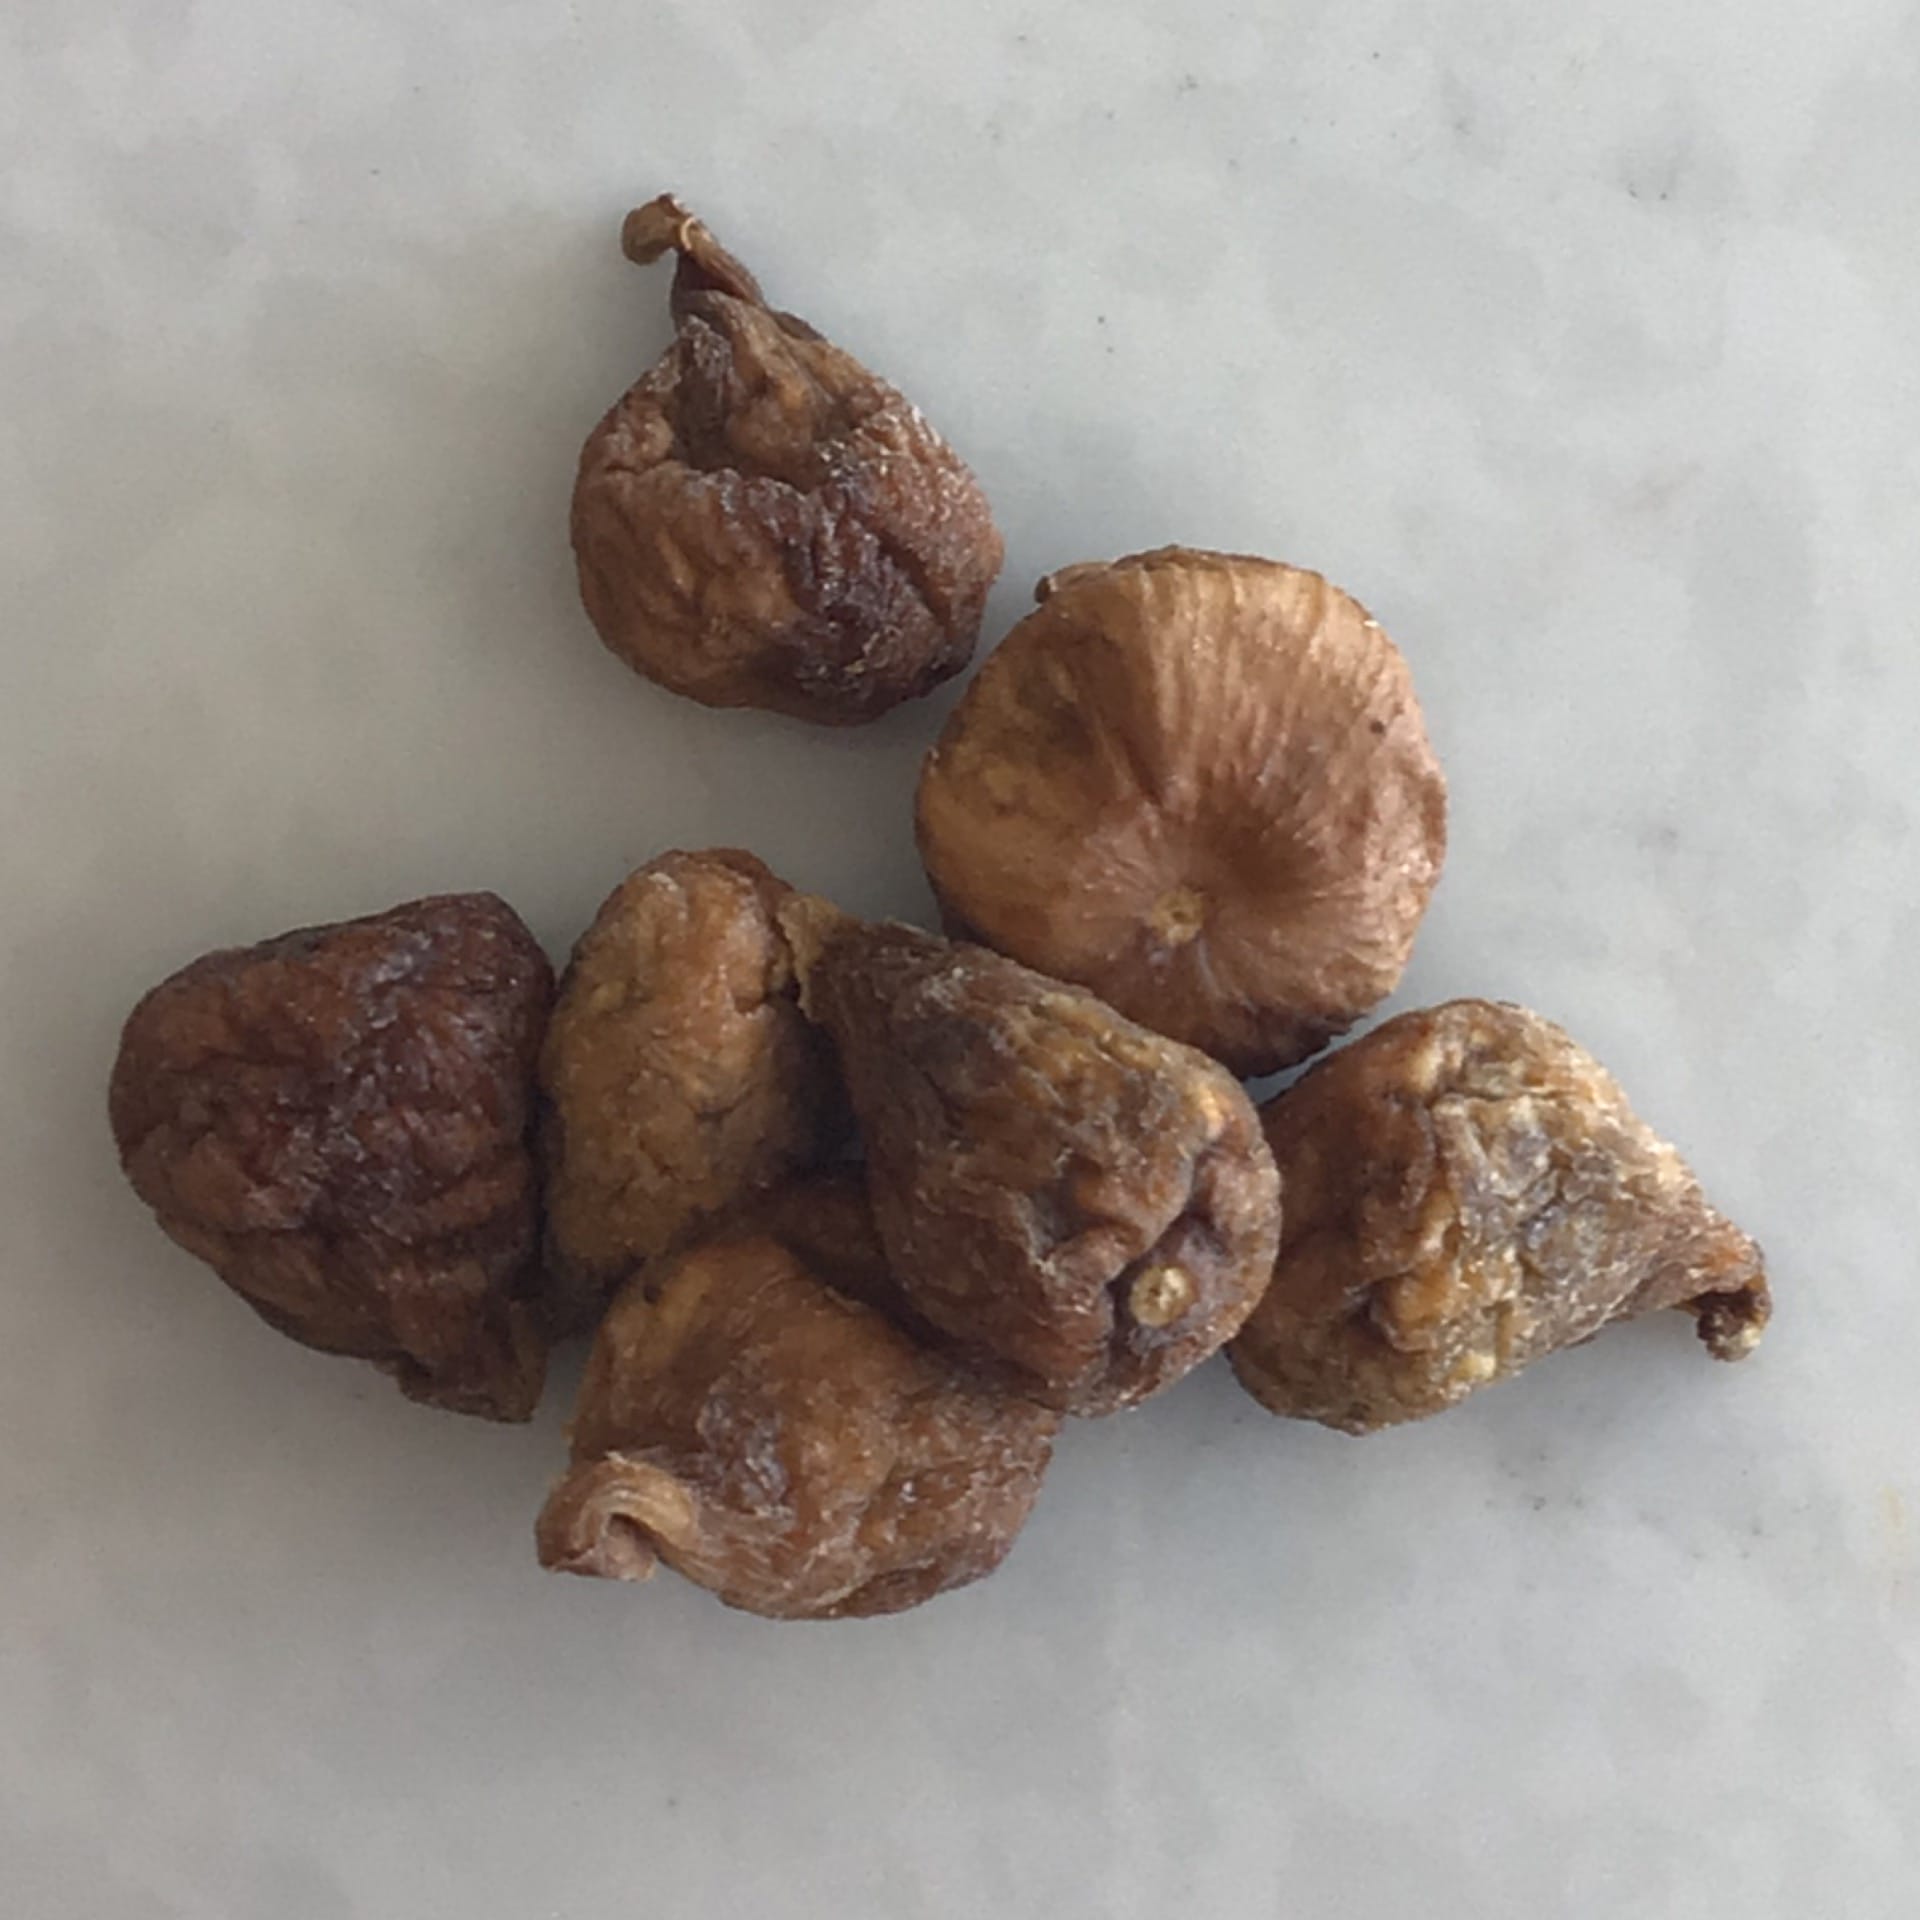 figs dried conadria